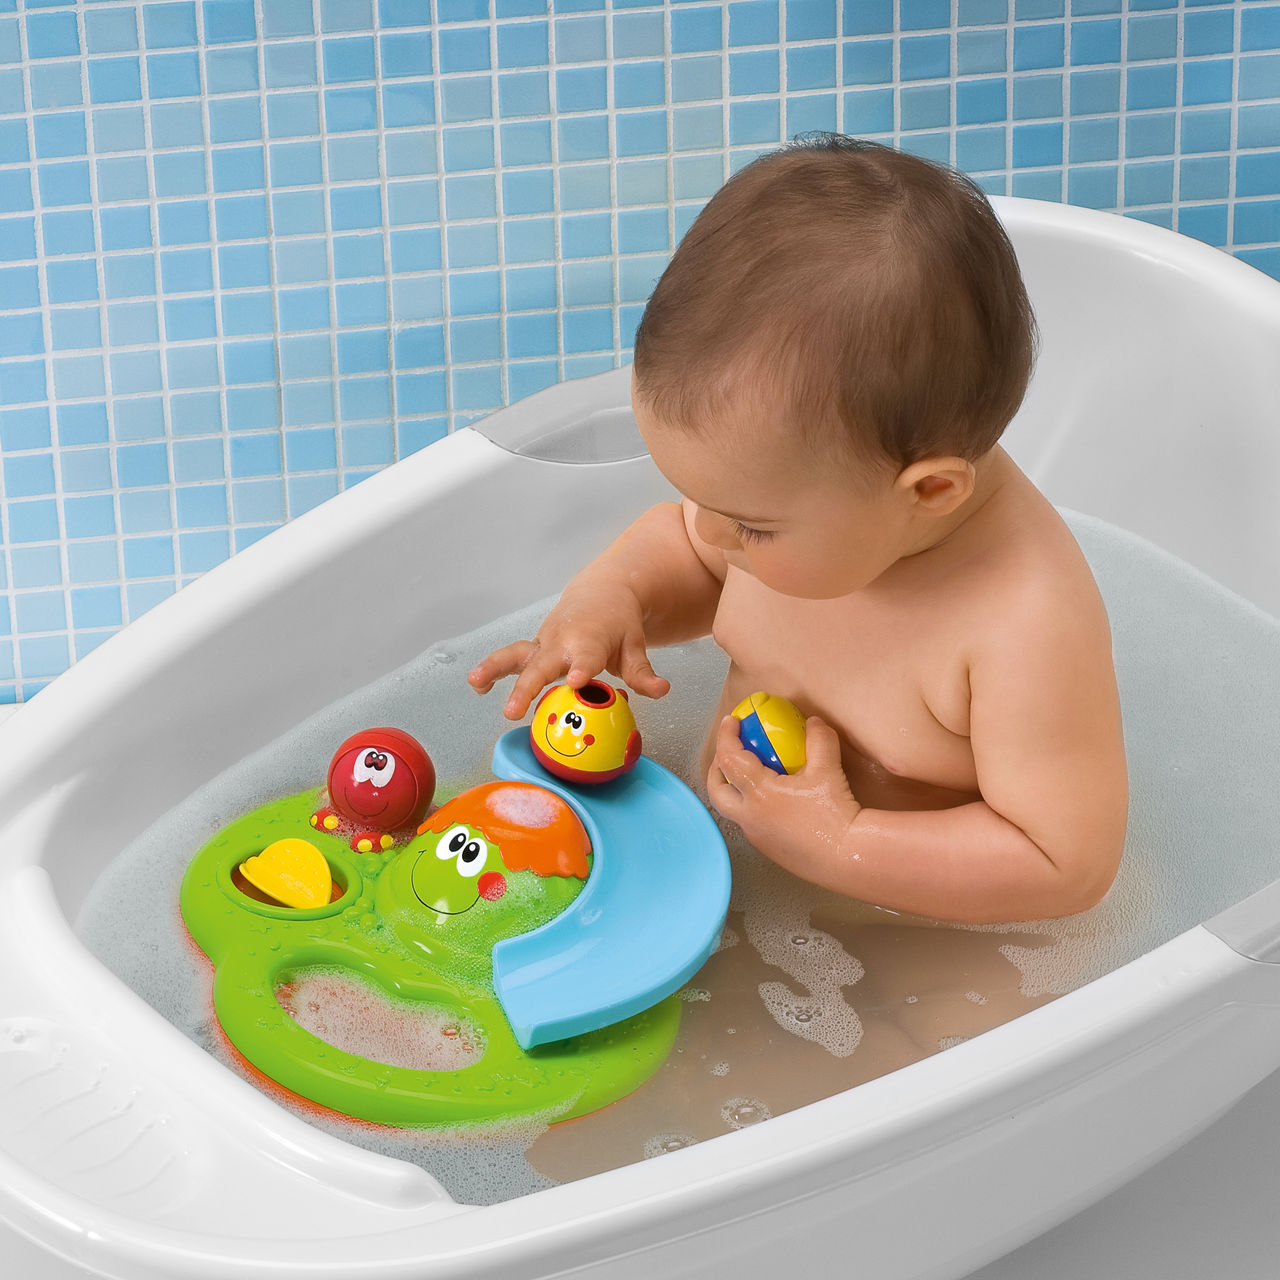 Игрушка купаться. Игрушки Чикко для ванны. Игрушки в ванную для детей. Игрушка для купания в ванной. Игрушки для купания грудничка.